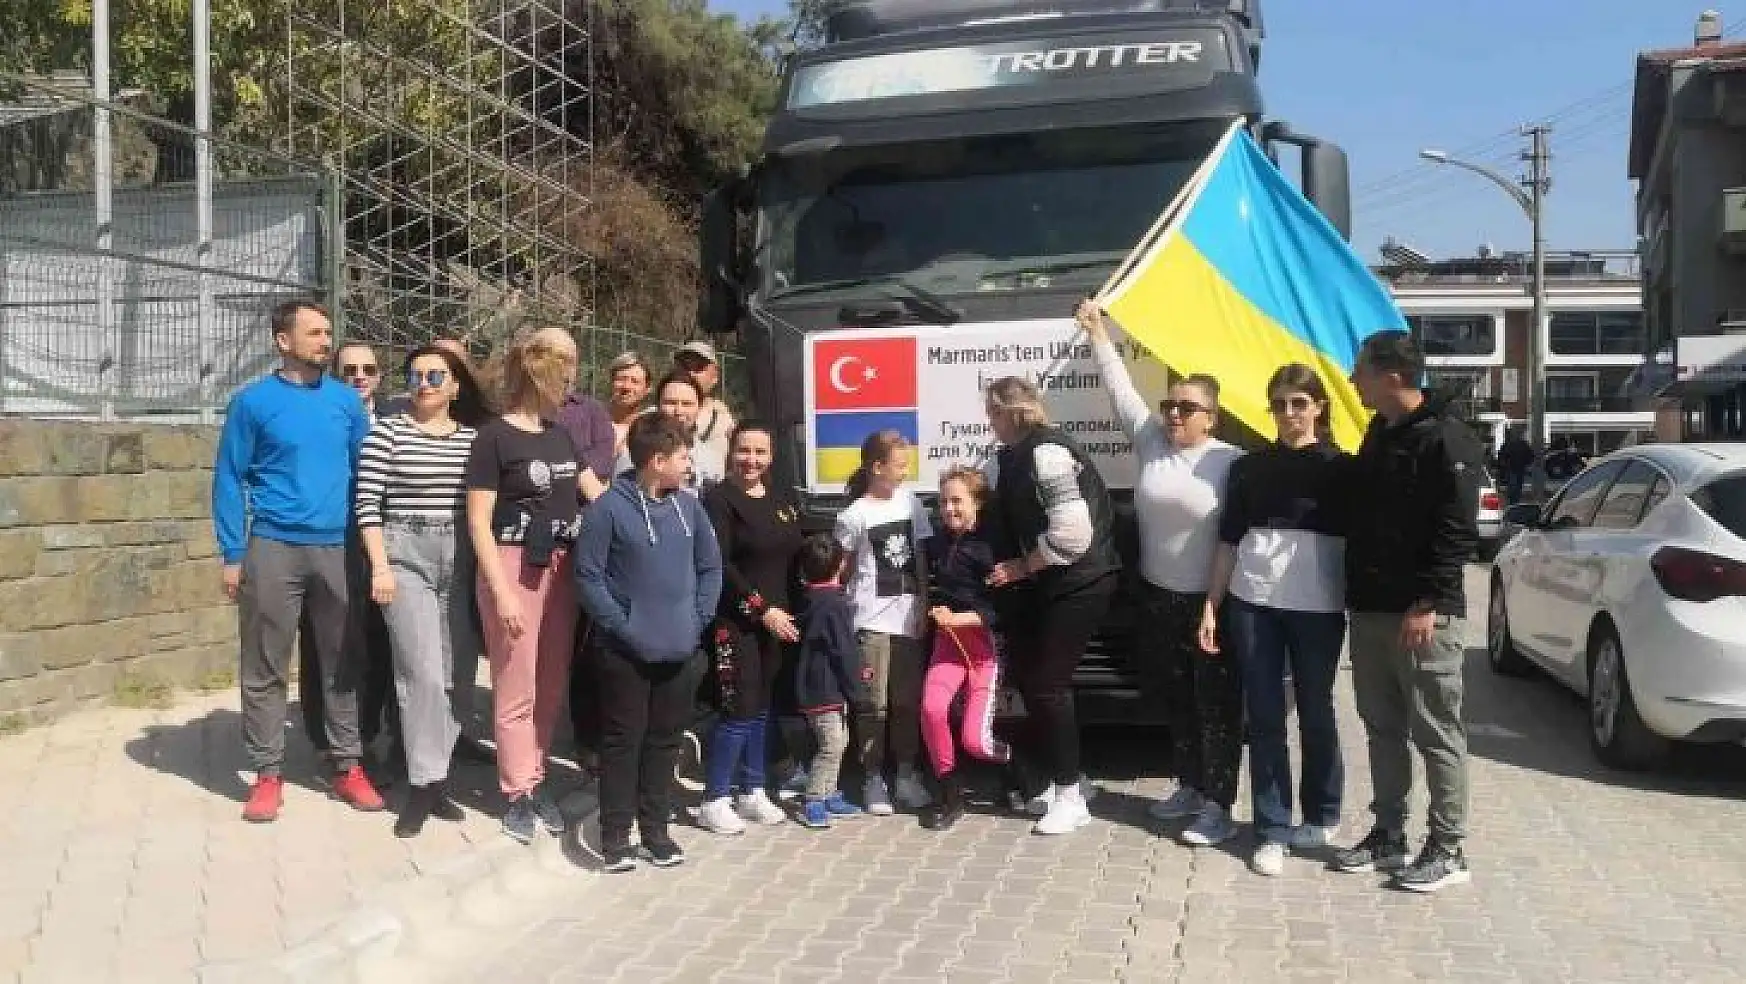 Marmaris'te yaşayan Ukraynalılar ülkelerine yardım gönderdi